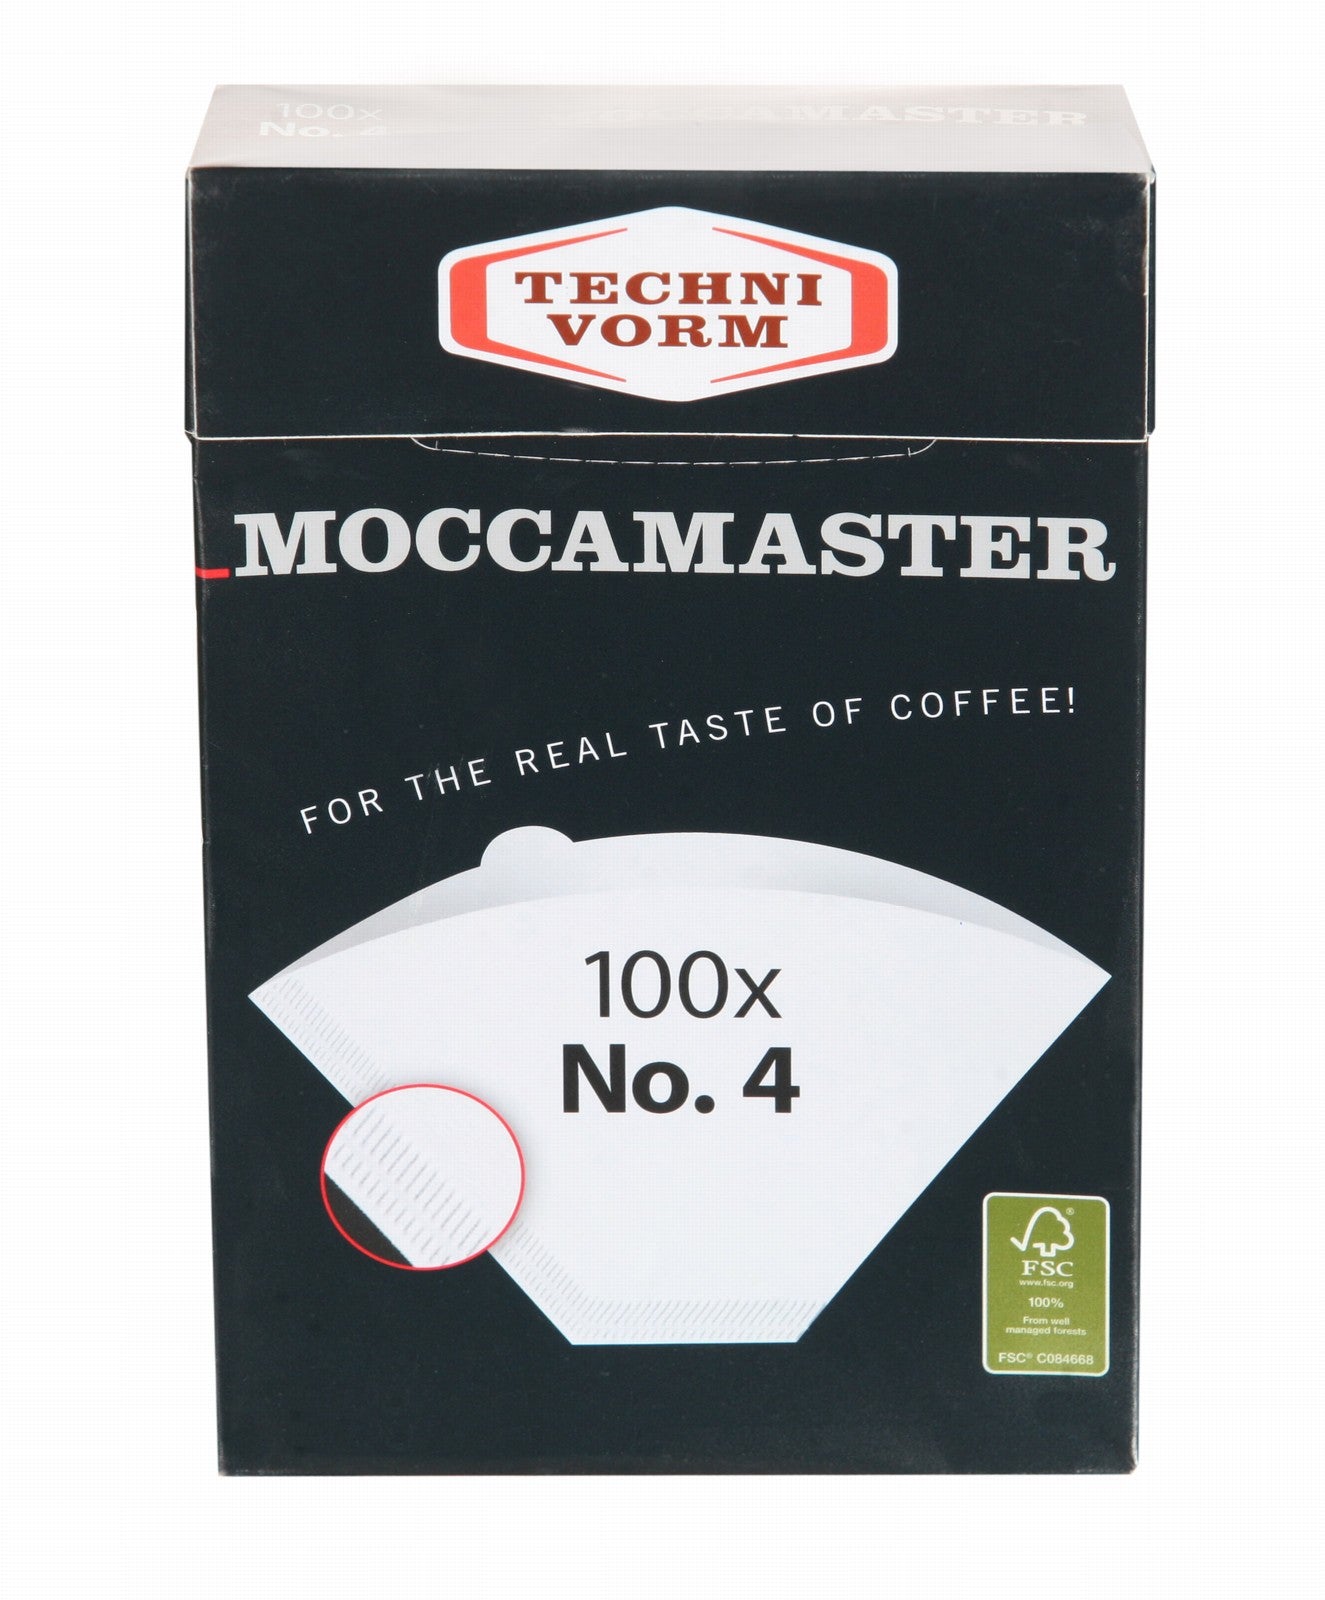 Moccamaster Kaffeefilter weiß Nr. 4 - Municoffee Company GbR